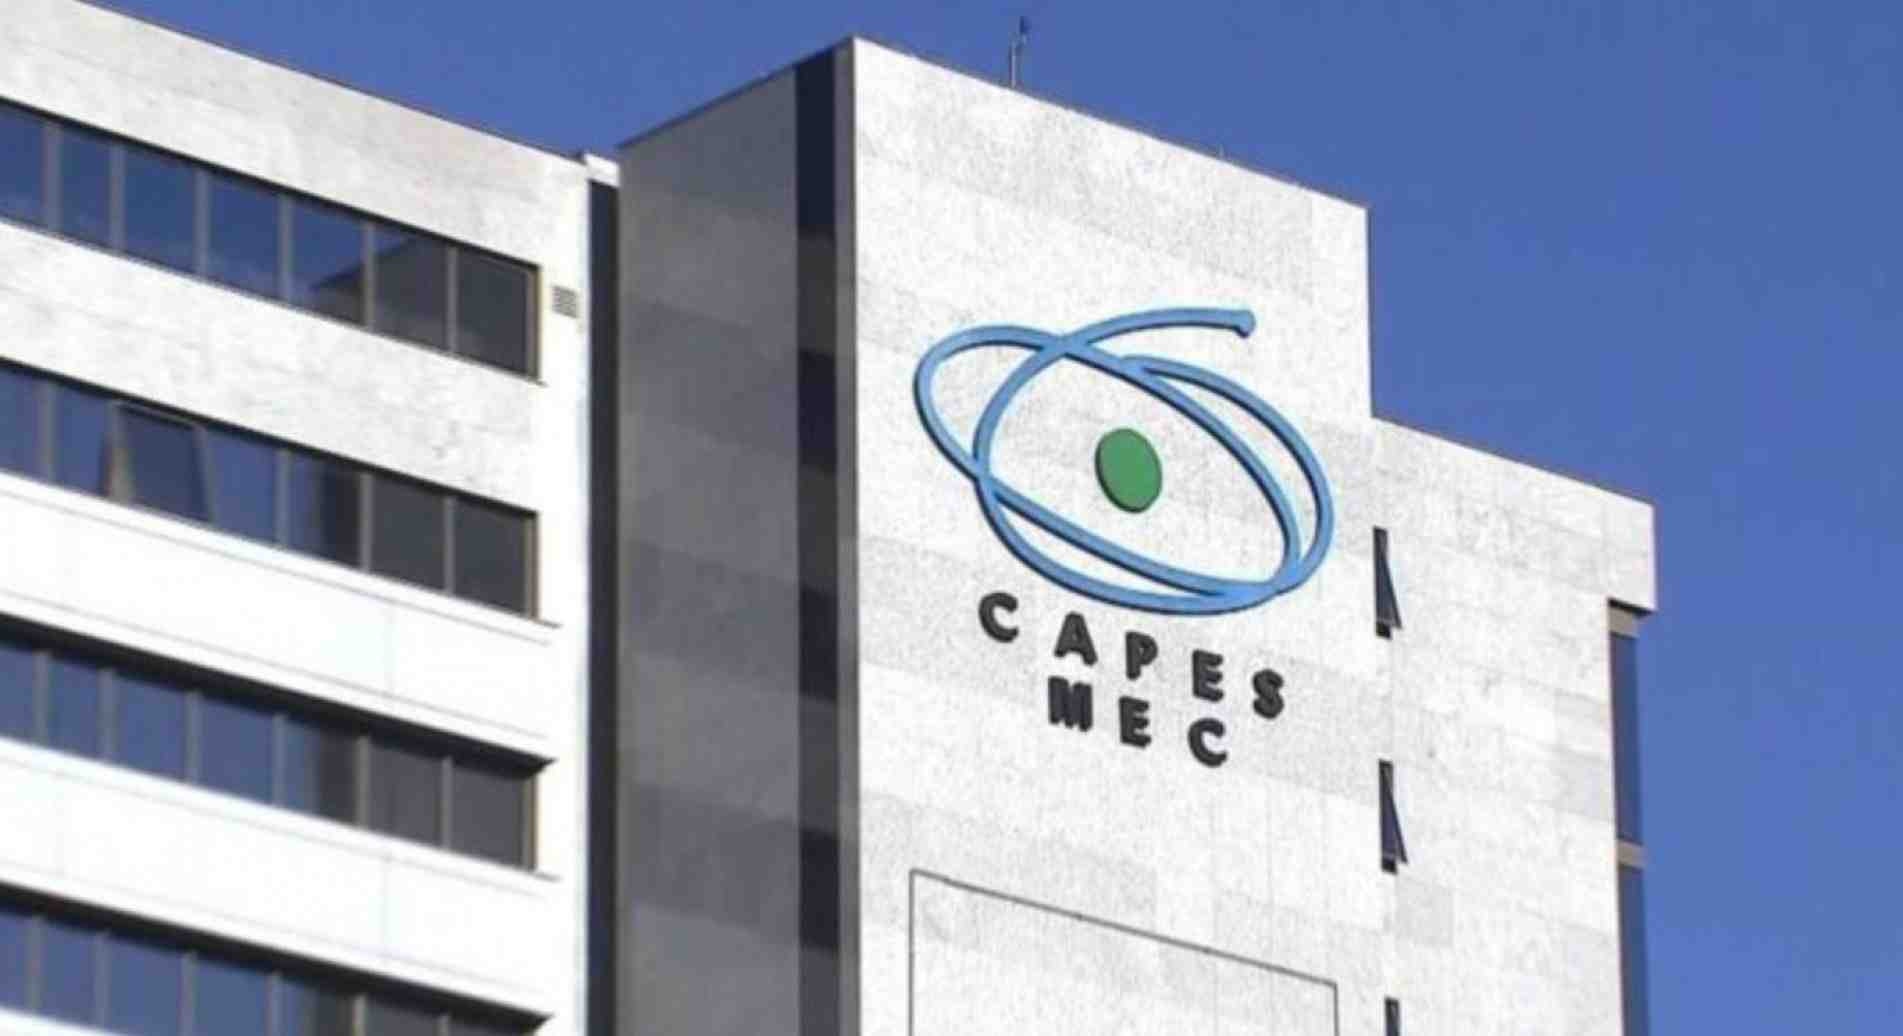  A Capes vai encerrar os repasses a centros de pesquisa de ponta sob argumento de não ter mais recursos para novas bolsas ou para prorrogar a vigência dos auxílios em 2022 